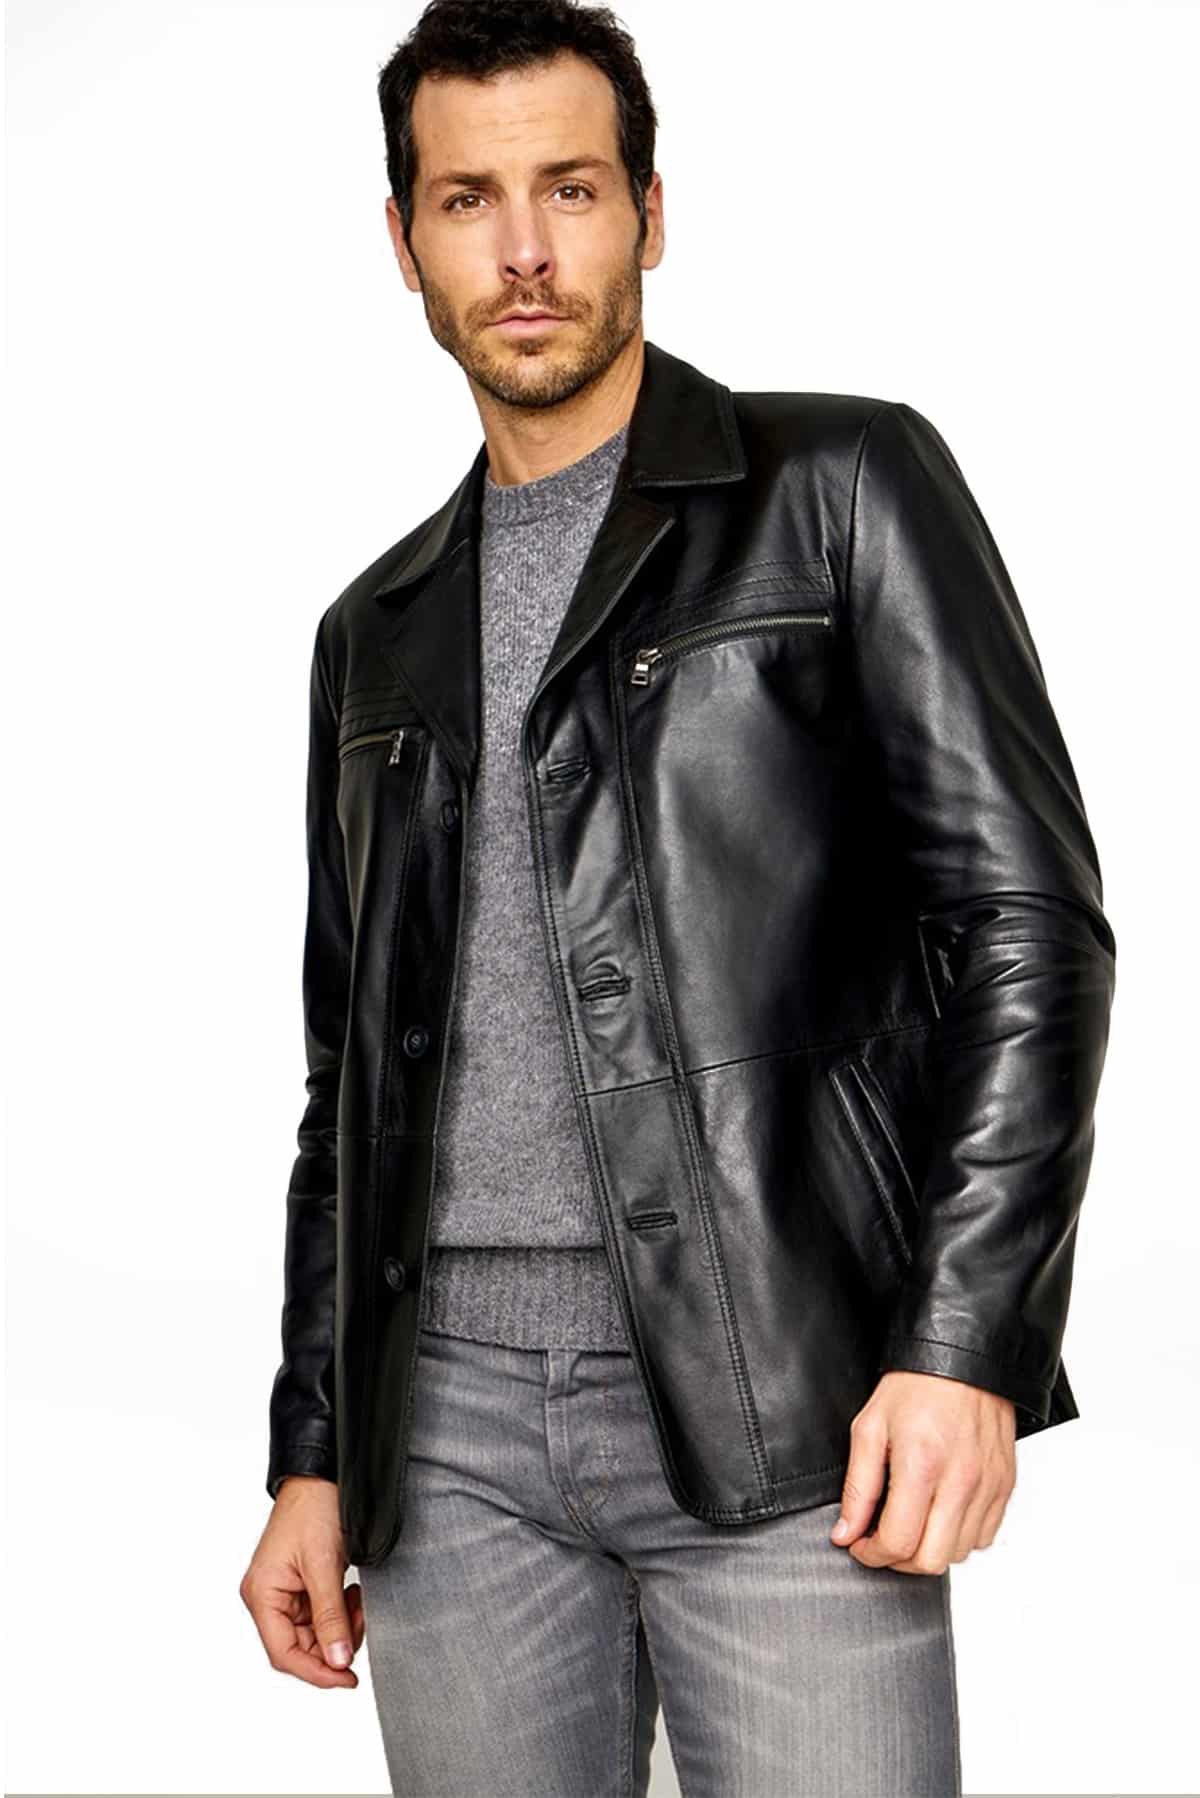 genuine leather jacket pakistan